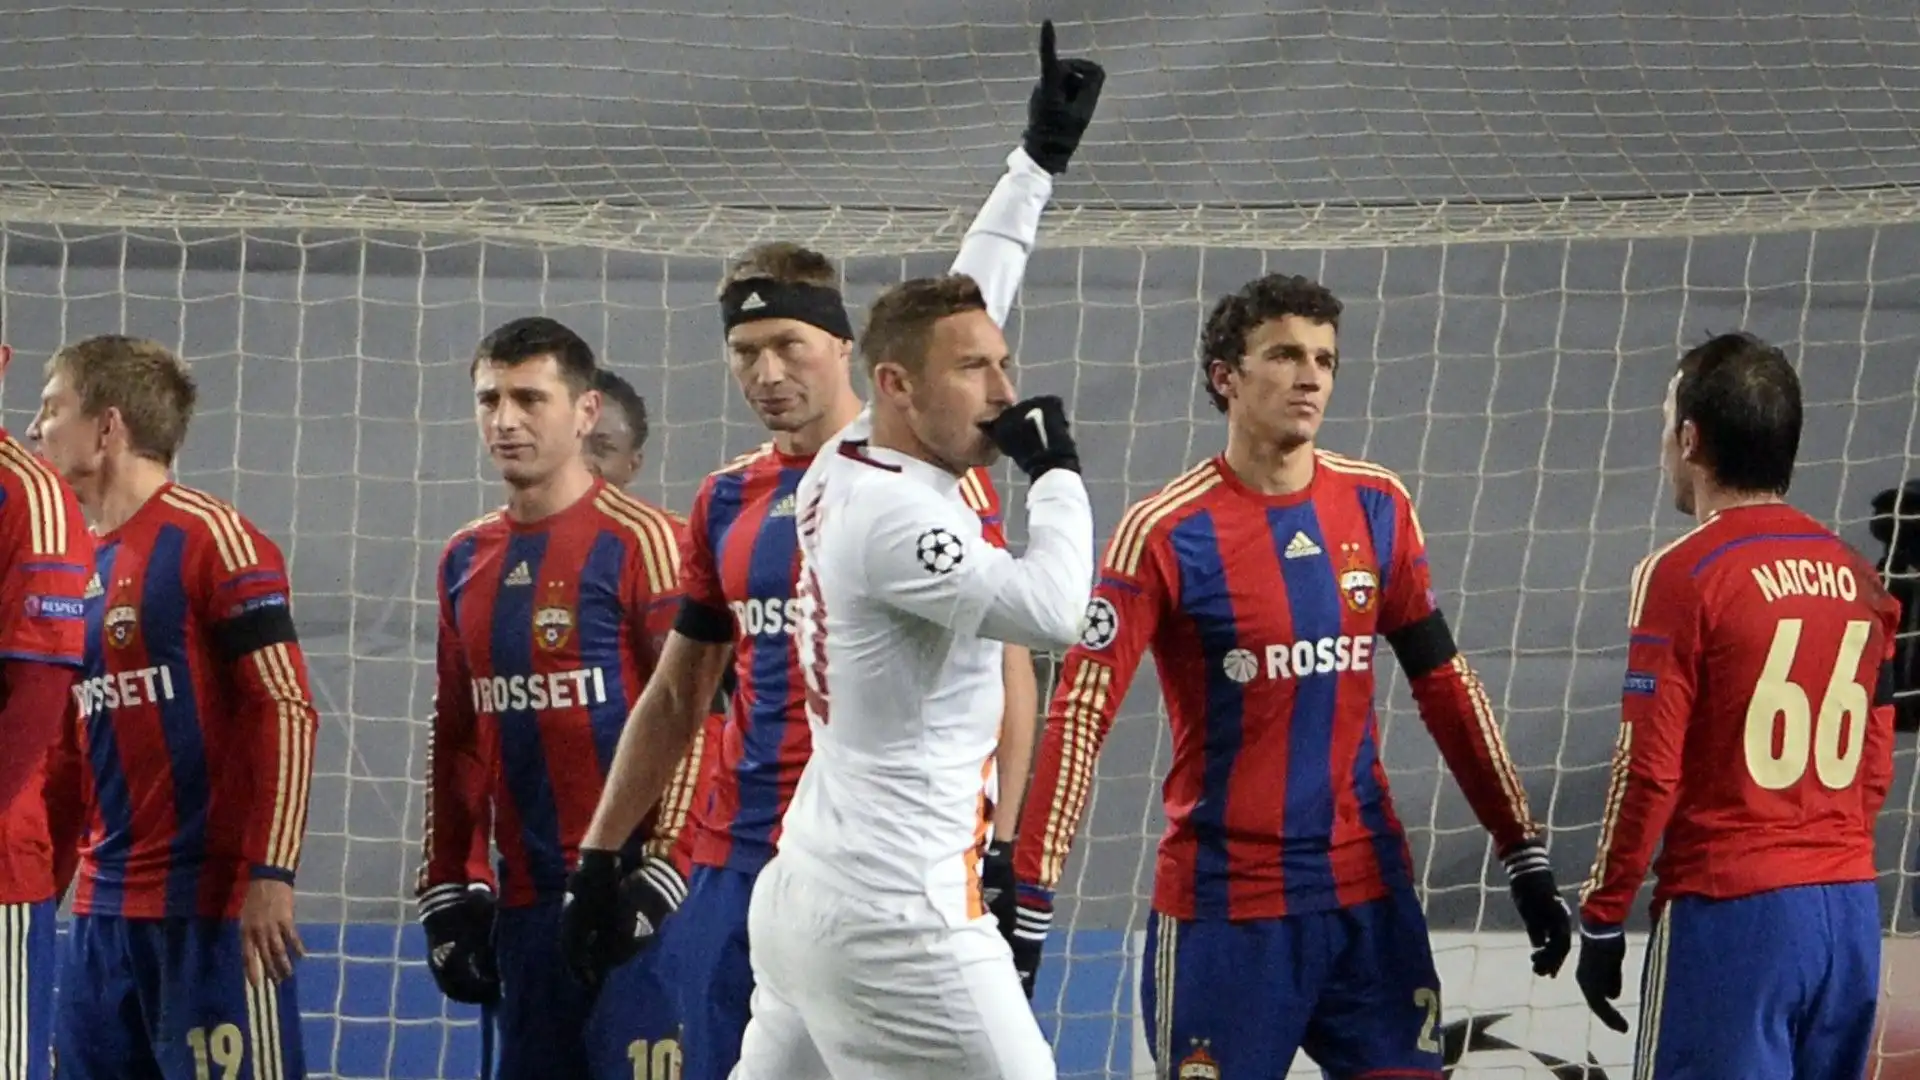 La partita terminò con il risultato di 1-1: al gol di Francesco Totti rispose nei minuti di recupero Vasilij Berezuckij